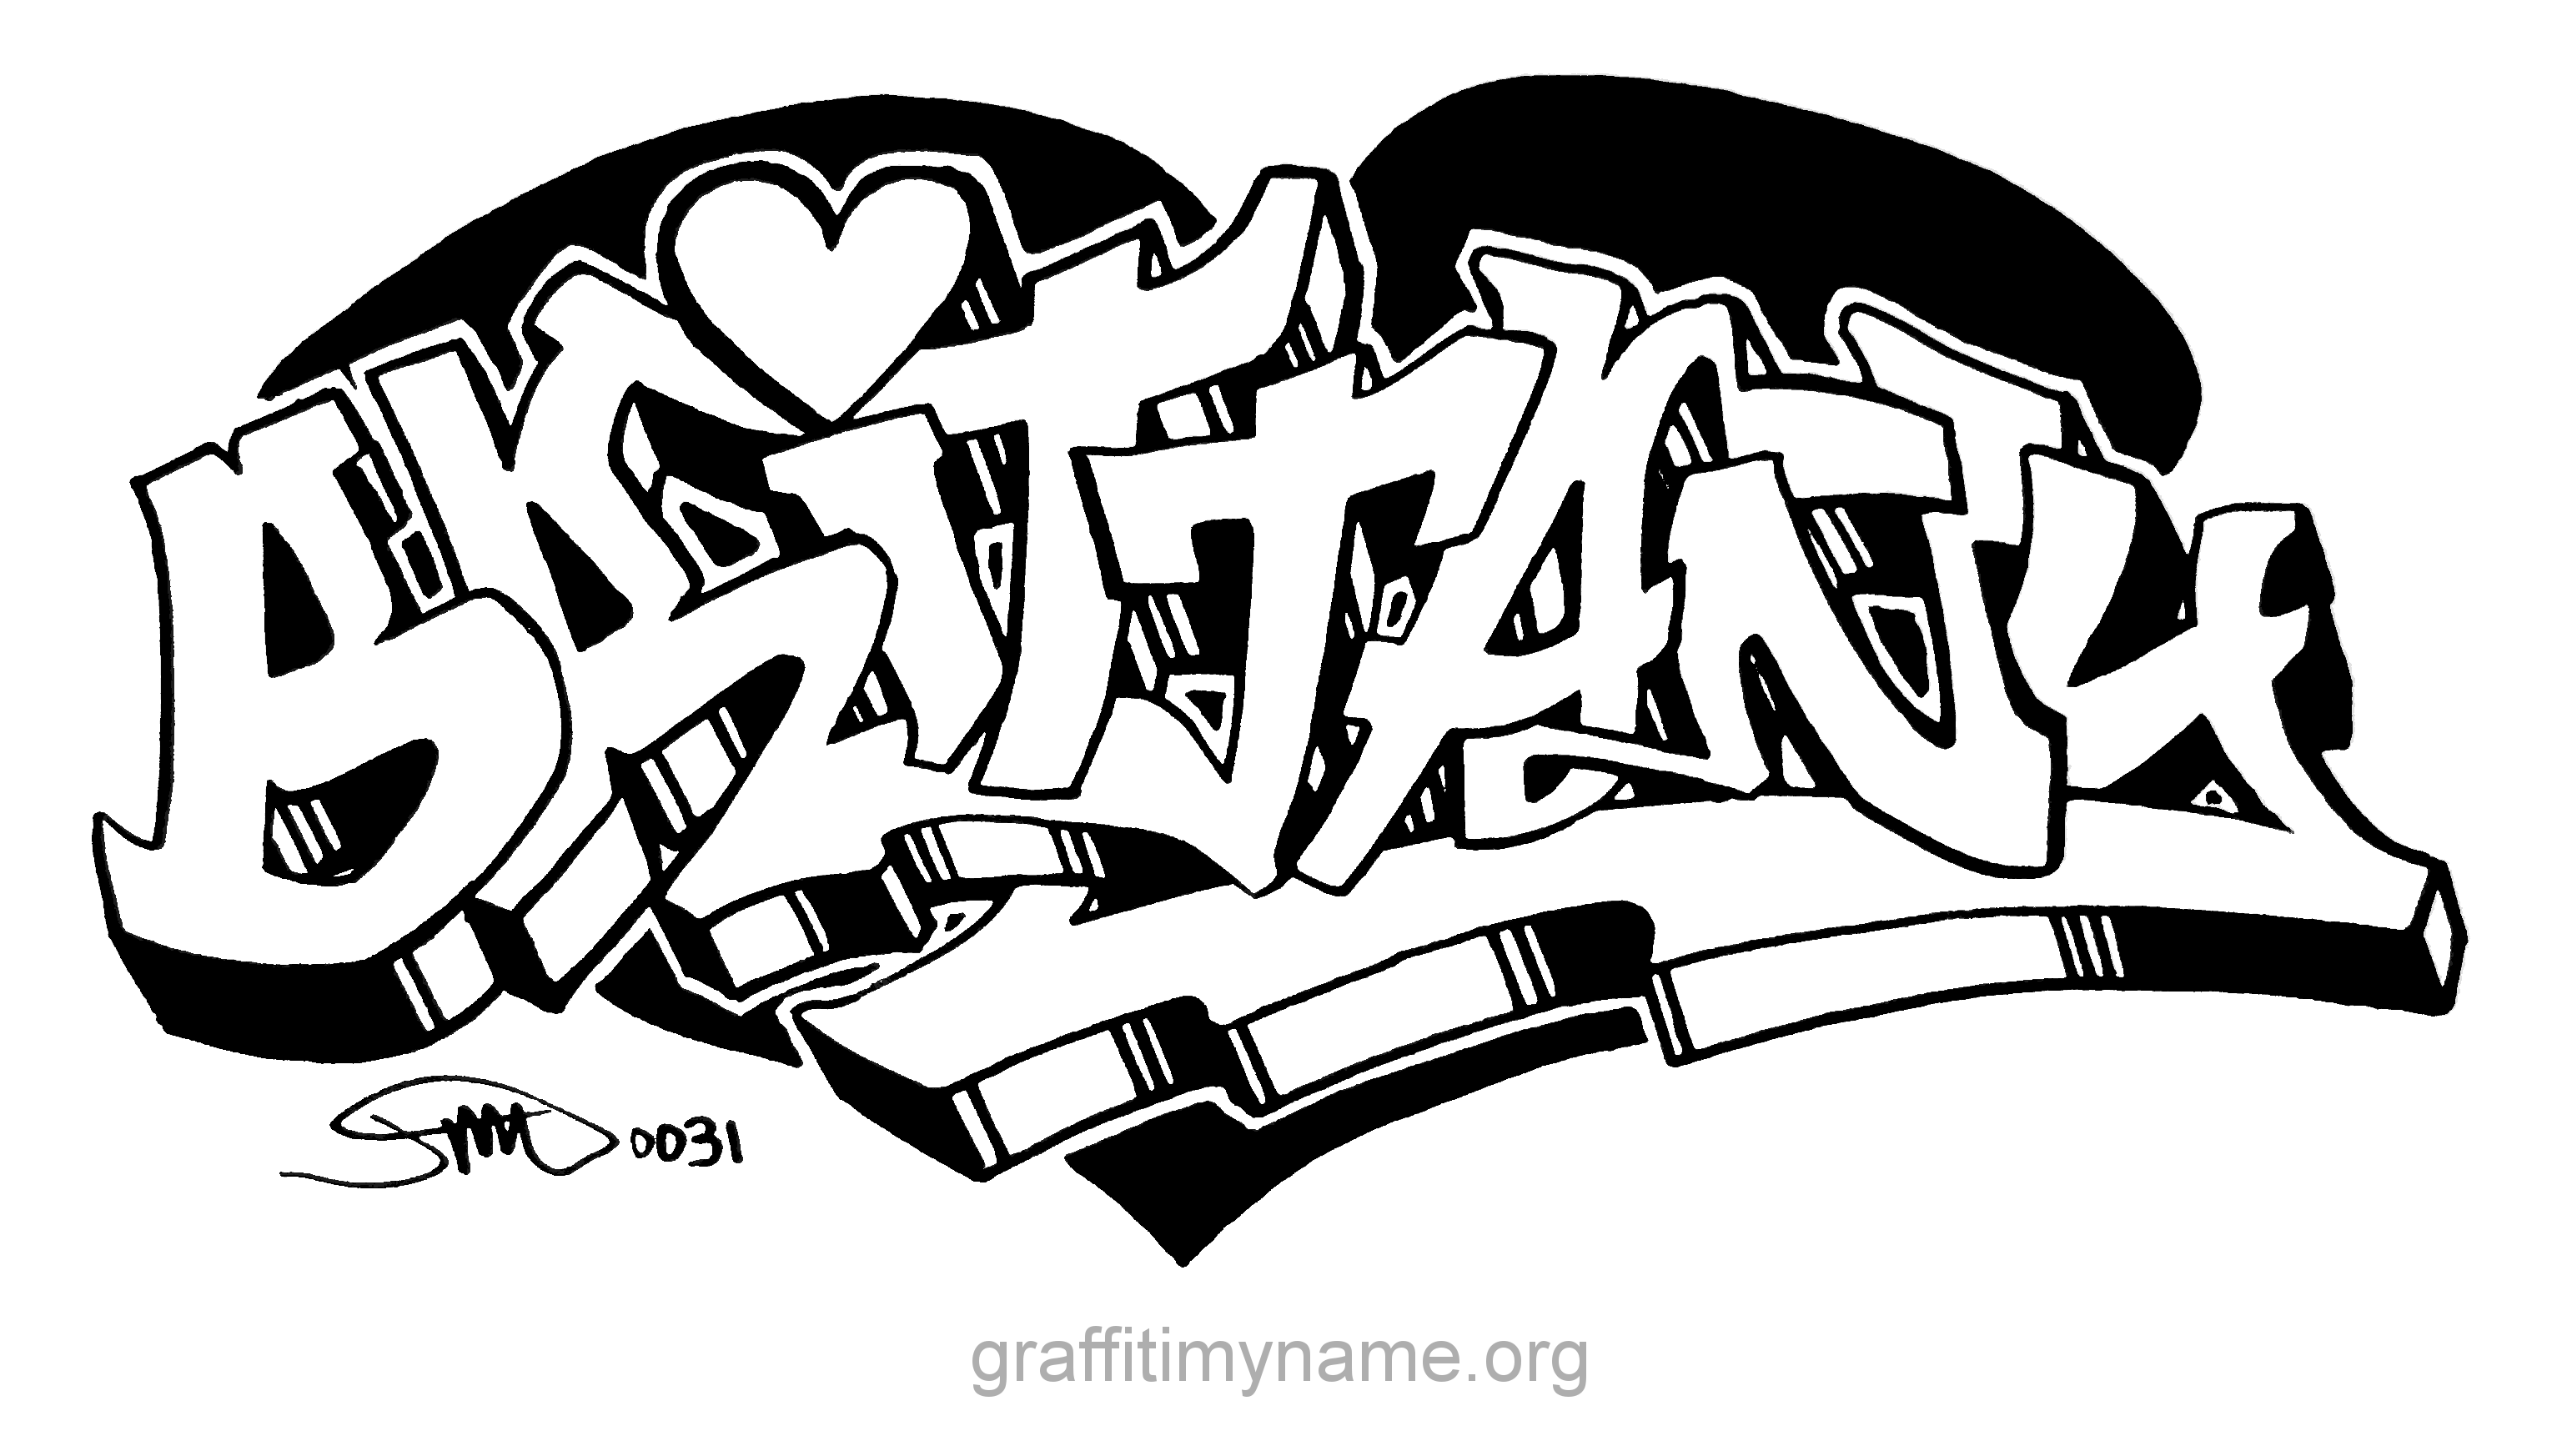 Граффити для распечатки